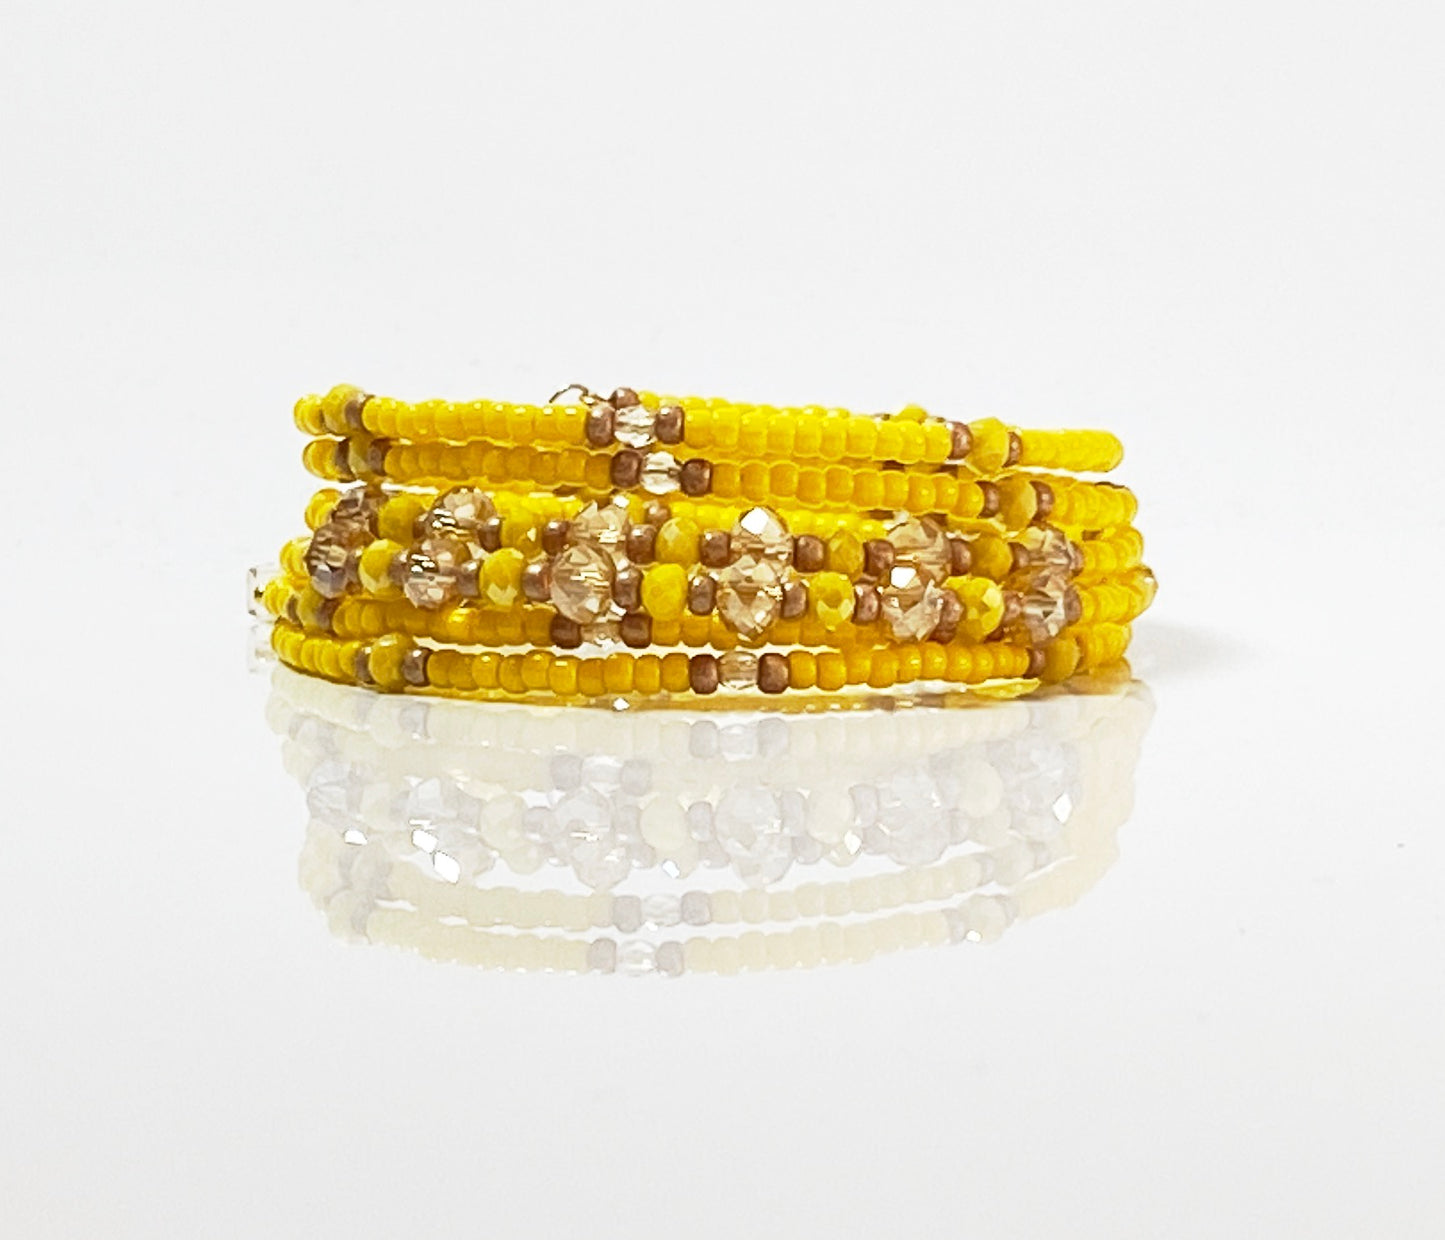 Dandelion field wrap bracelet